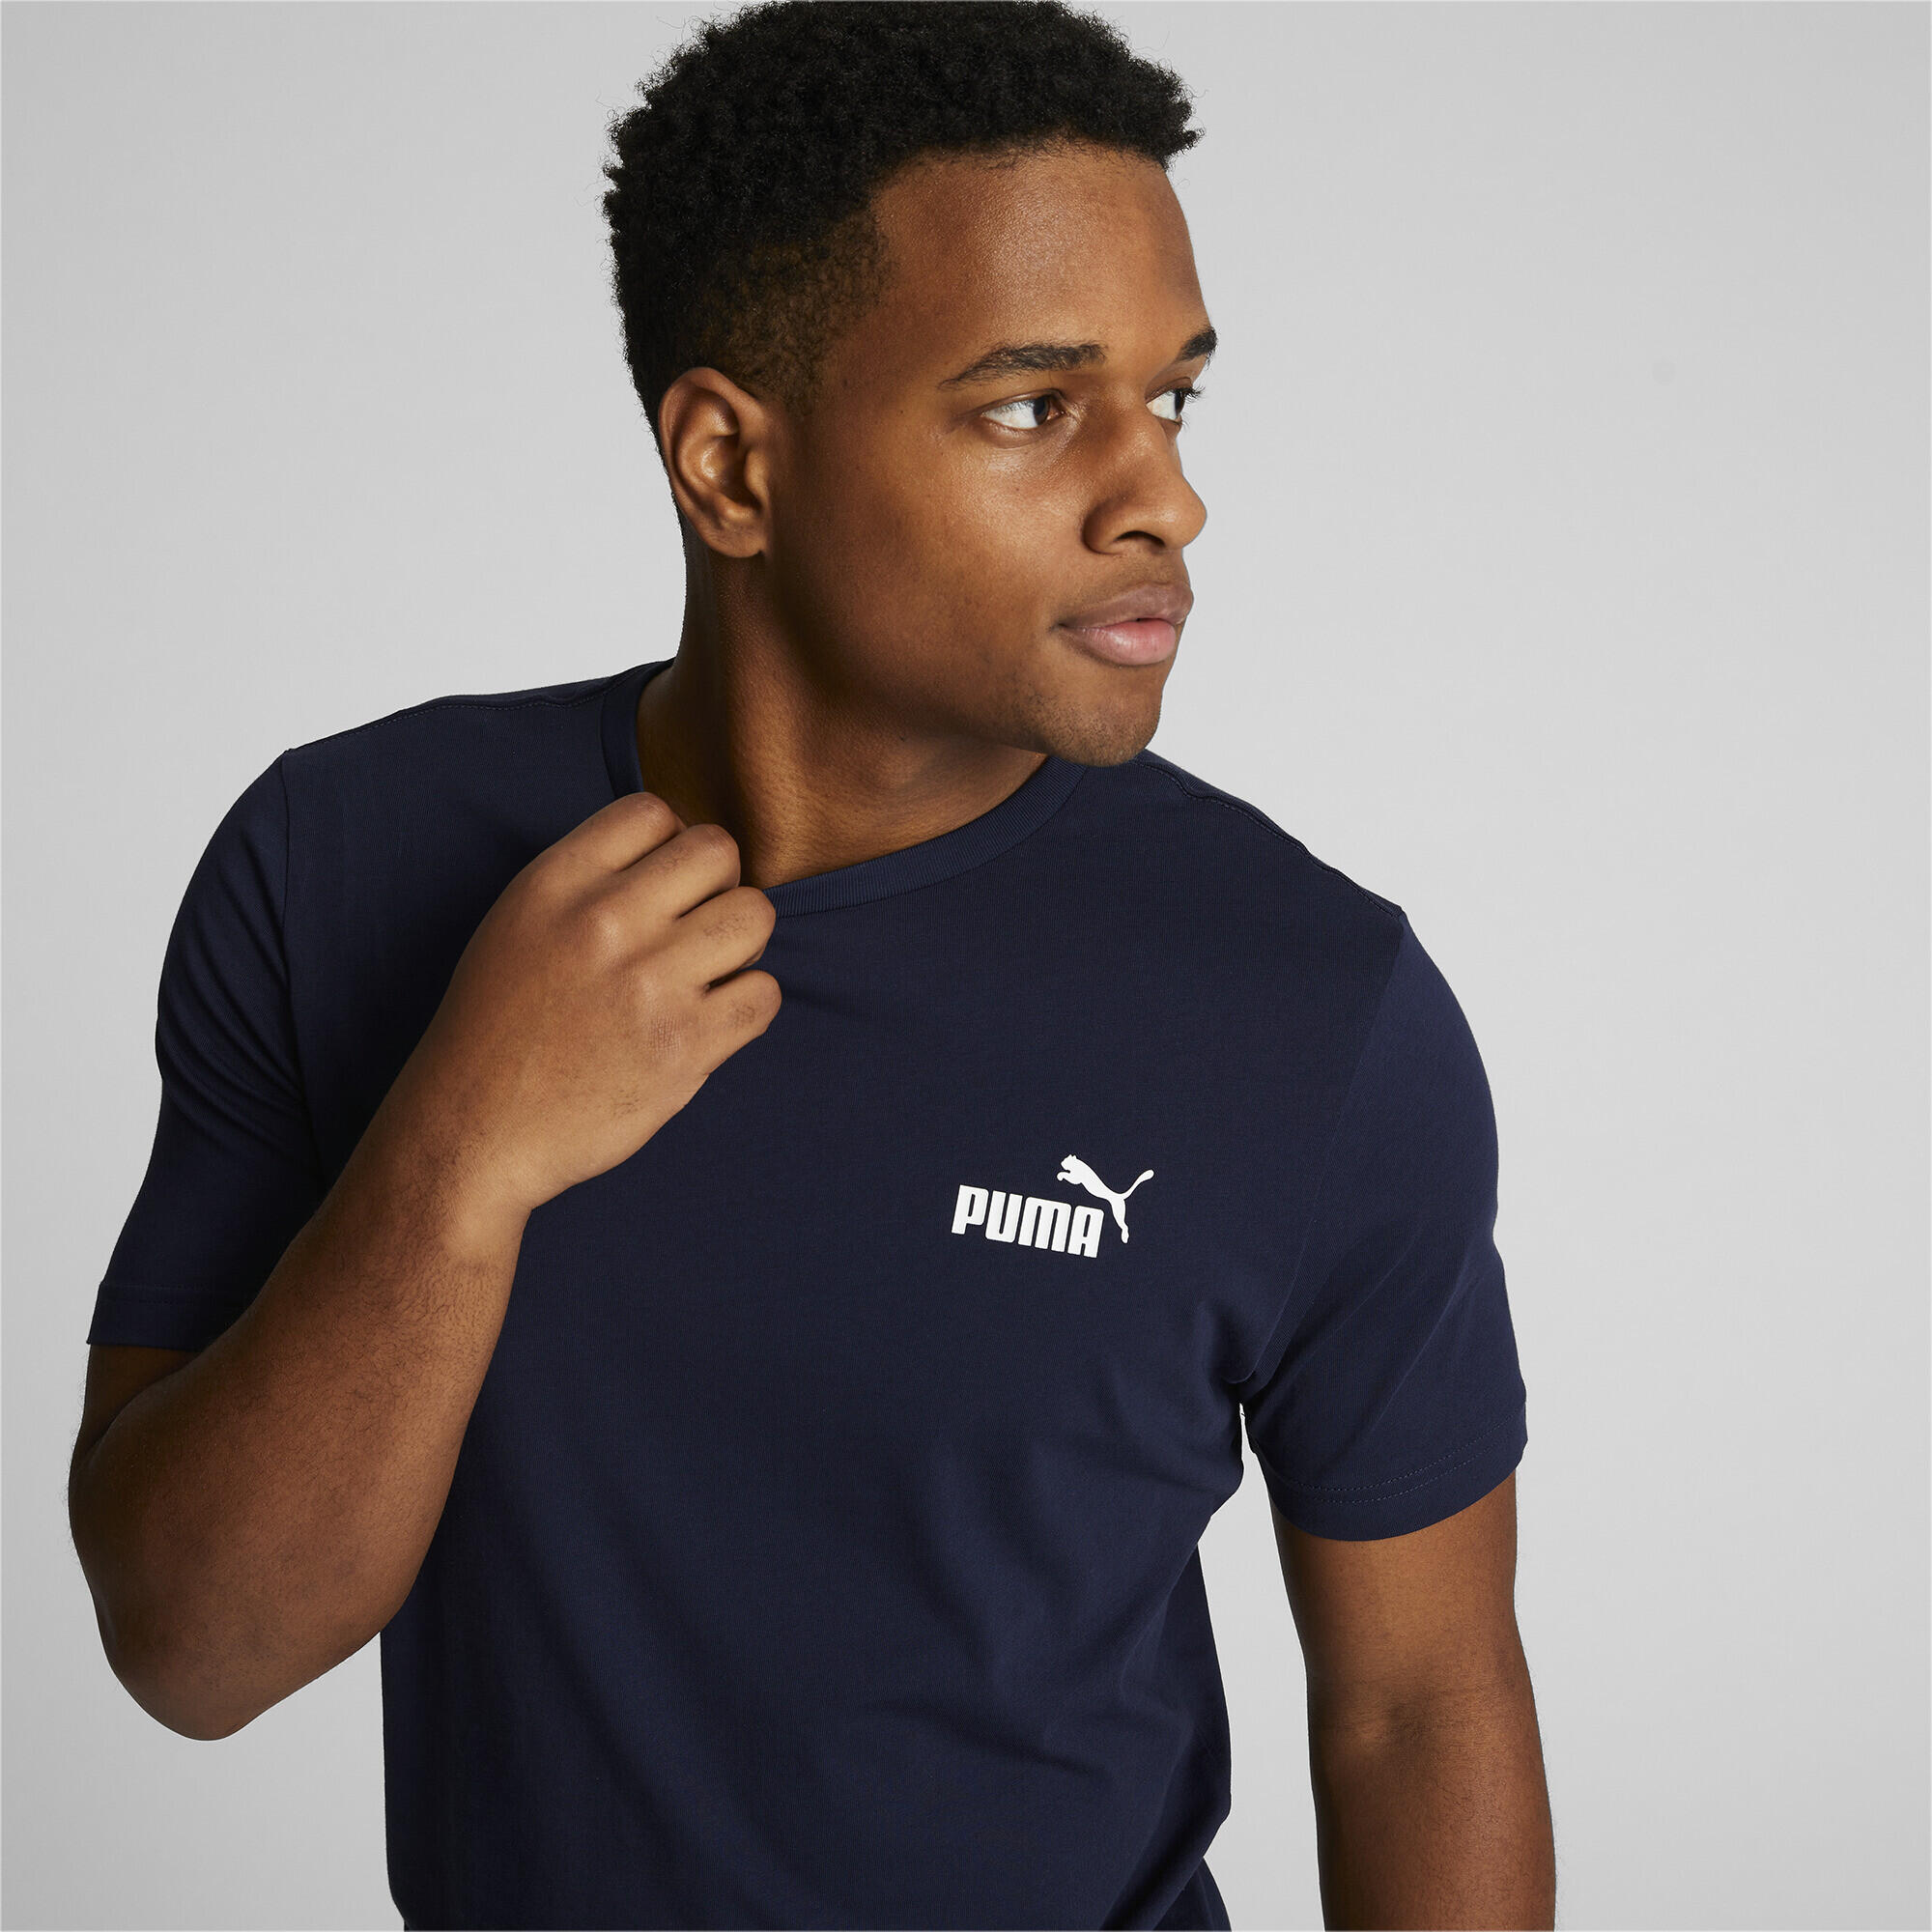 PUMA Mens Essentials Small Logo T-Shirt Tee Top - Peacoat 5/7